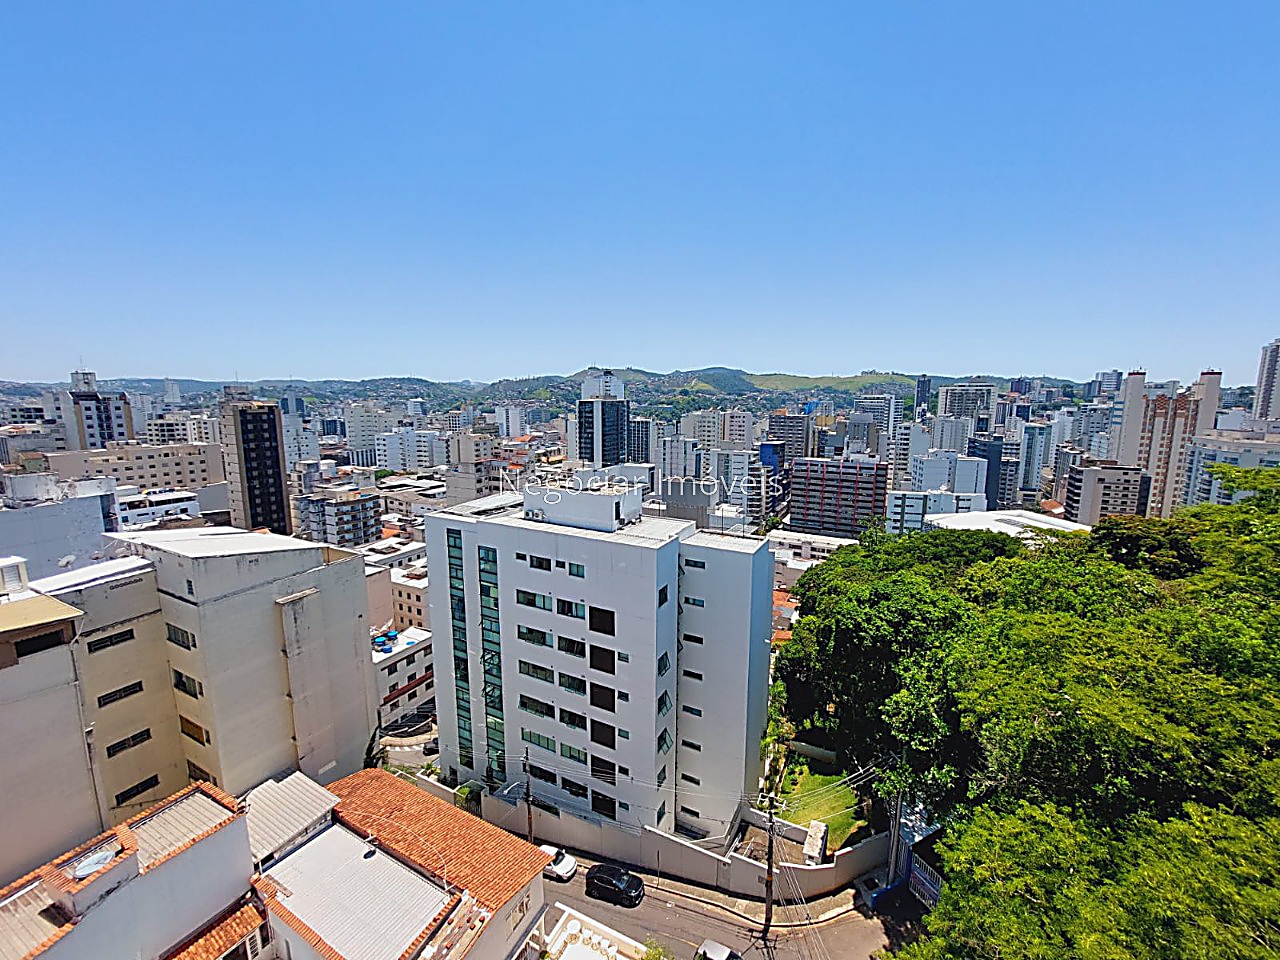 Apartamento à venda em Paineiras, Juiz de Fora - MG - Foto 6